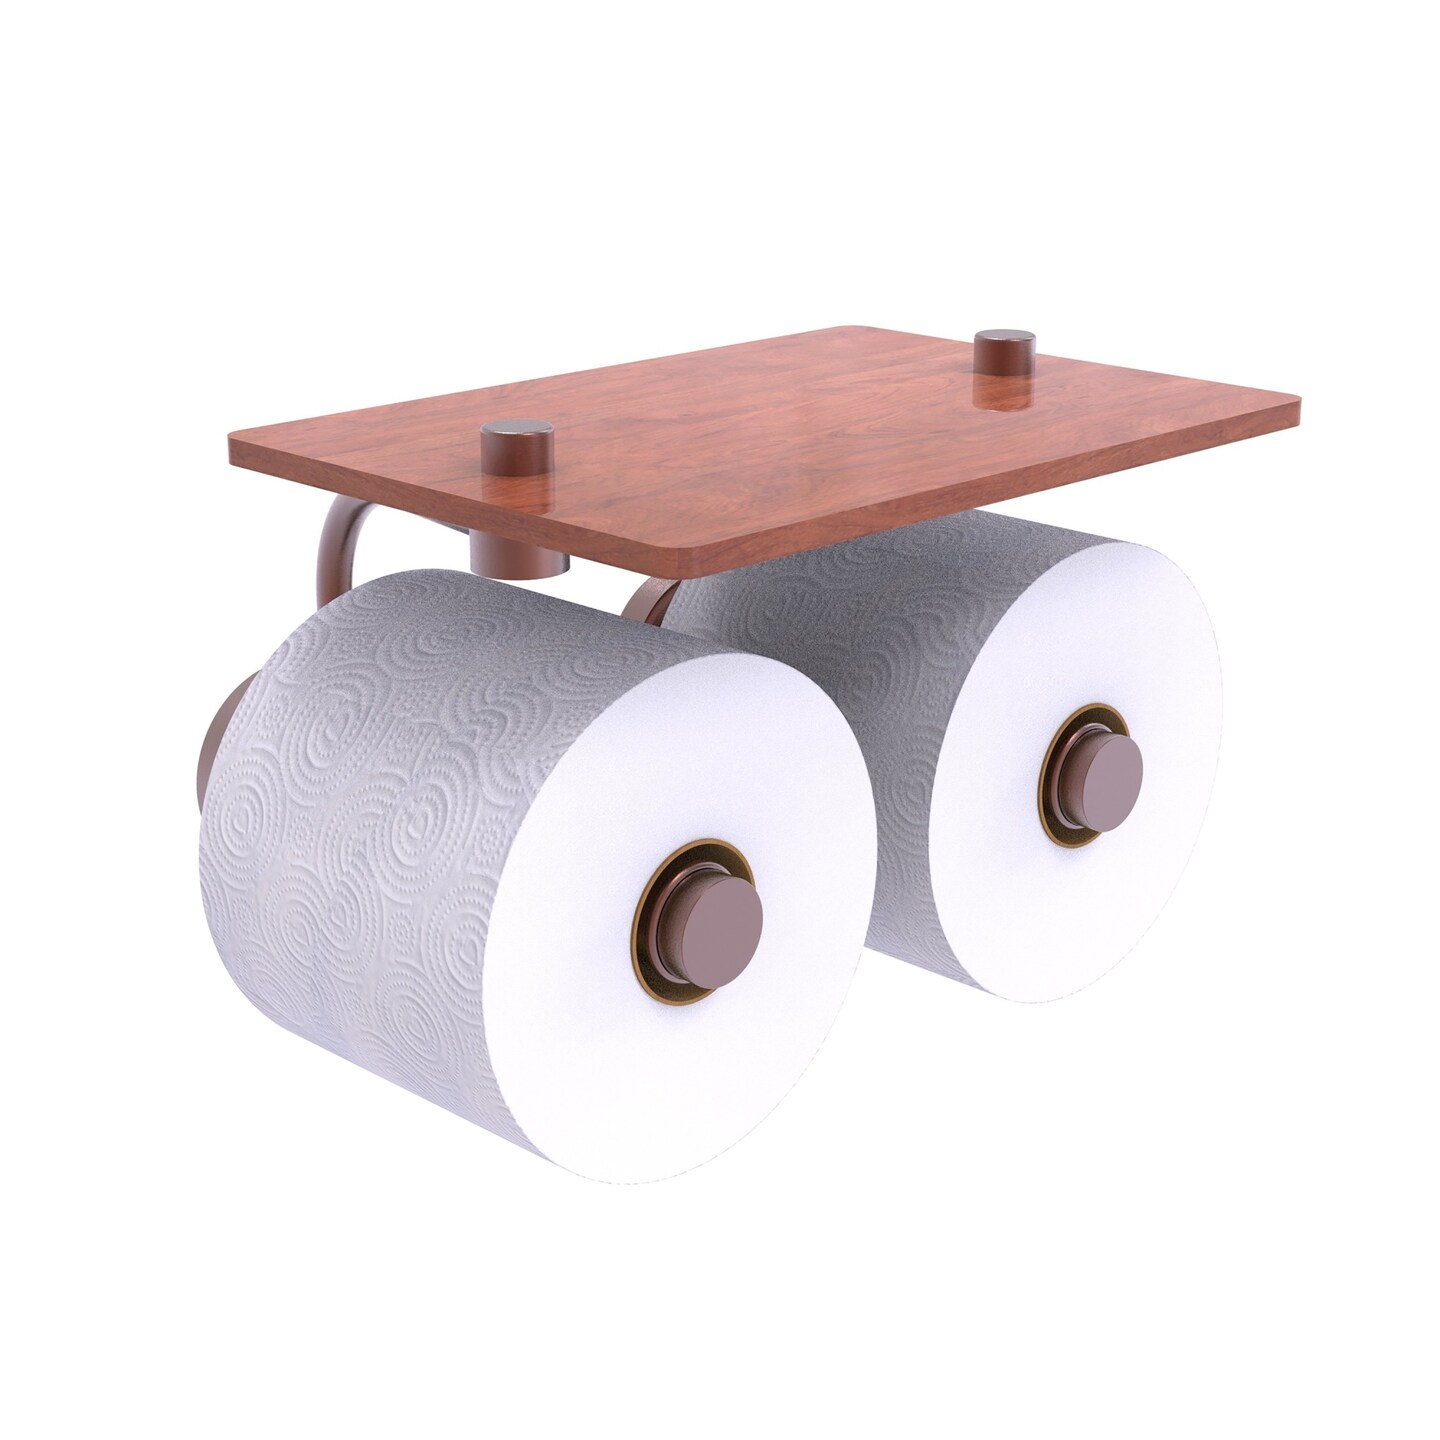 Copper Elegant Paper Towel Holder